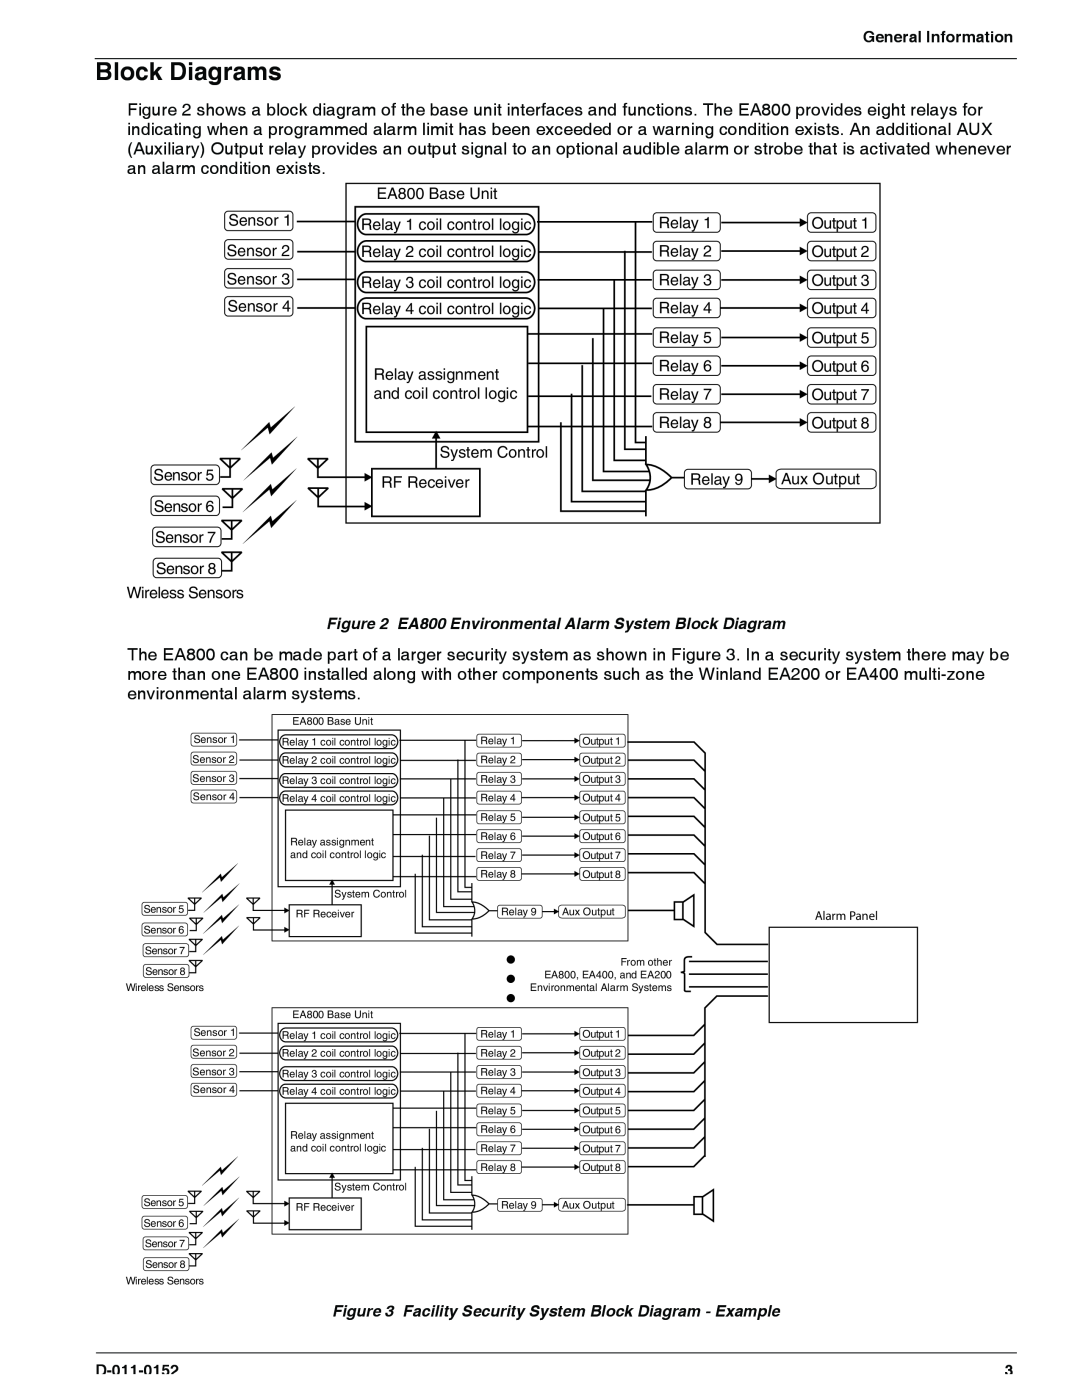 Enviro EA800 owner manual Block Diagrams, General Information, D-011-0152 